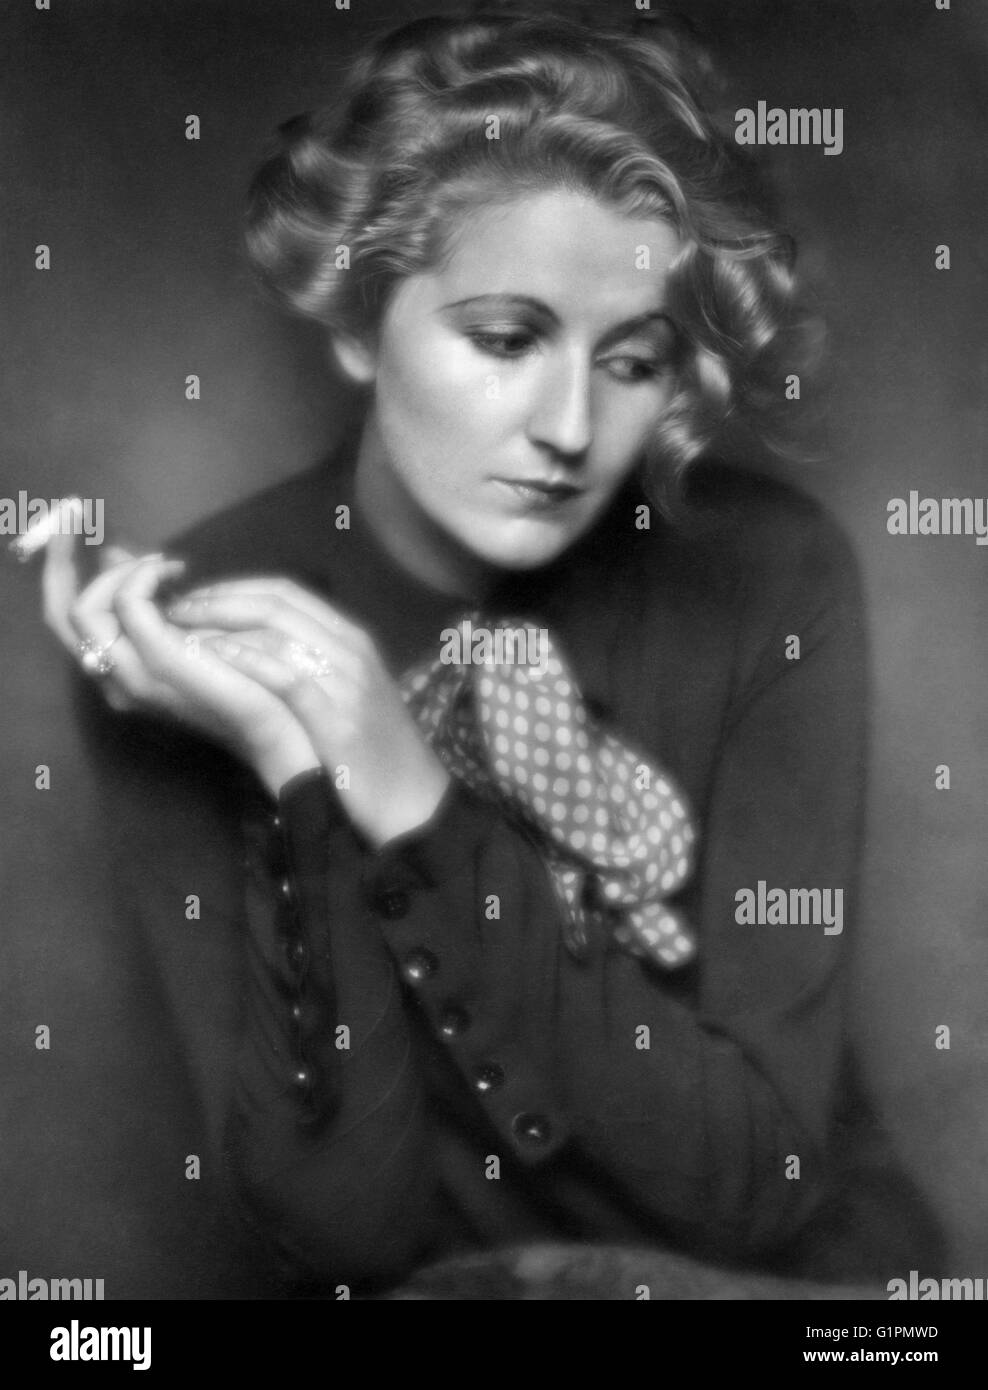 FRIEDL HAERLIN (1901-1981).  German actress. Photograph, c1930. Stock Photo